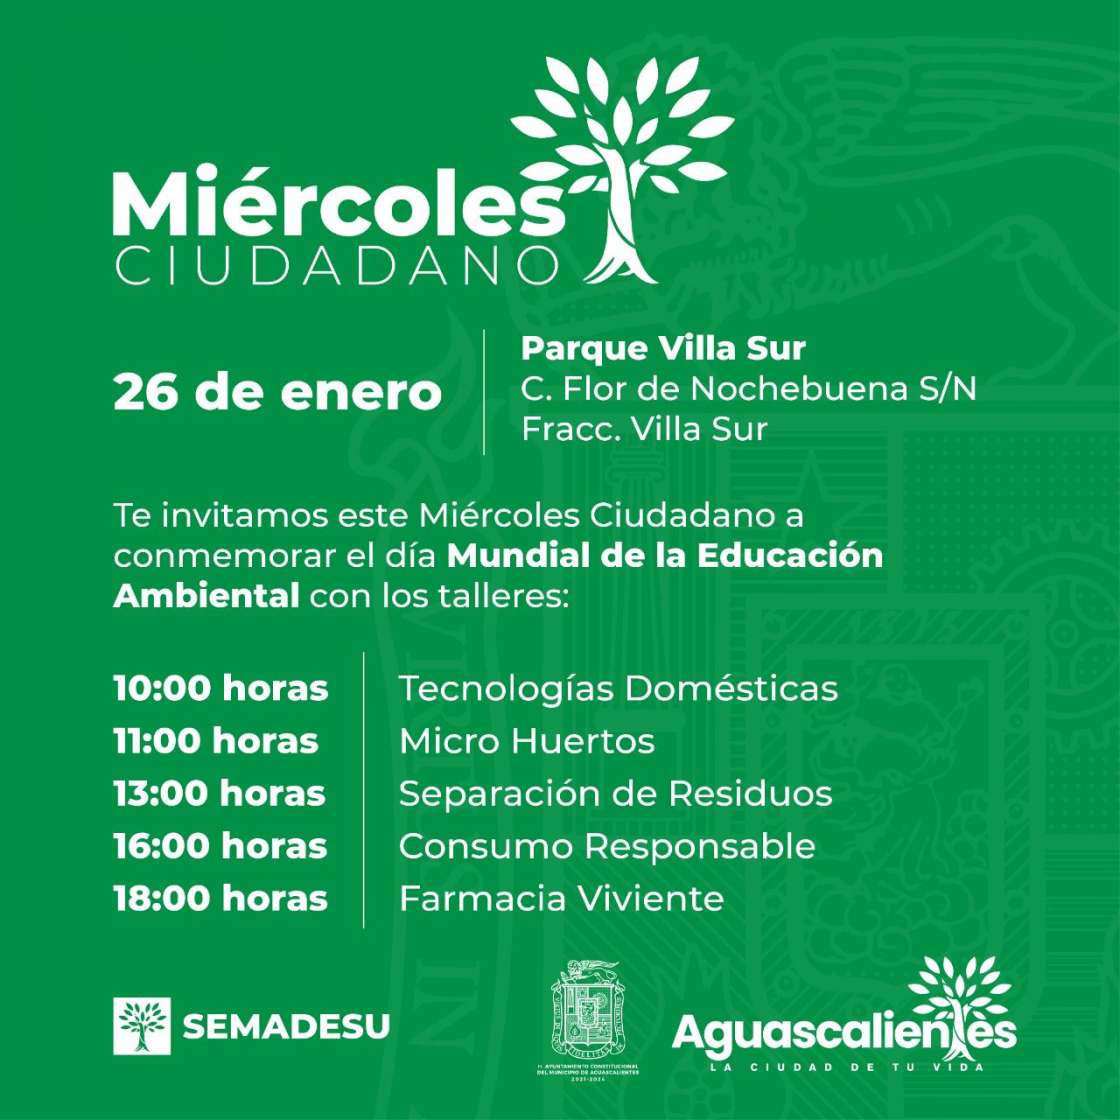 En conmemoración del Día Mundial de la Educación Ambiental, Presidencia Municipal de Aguascalientes invita a participar en los talleres teóricos y prácticos a favor del cuidado ambiental